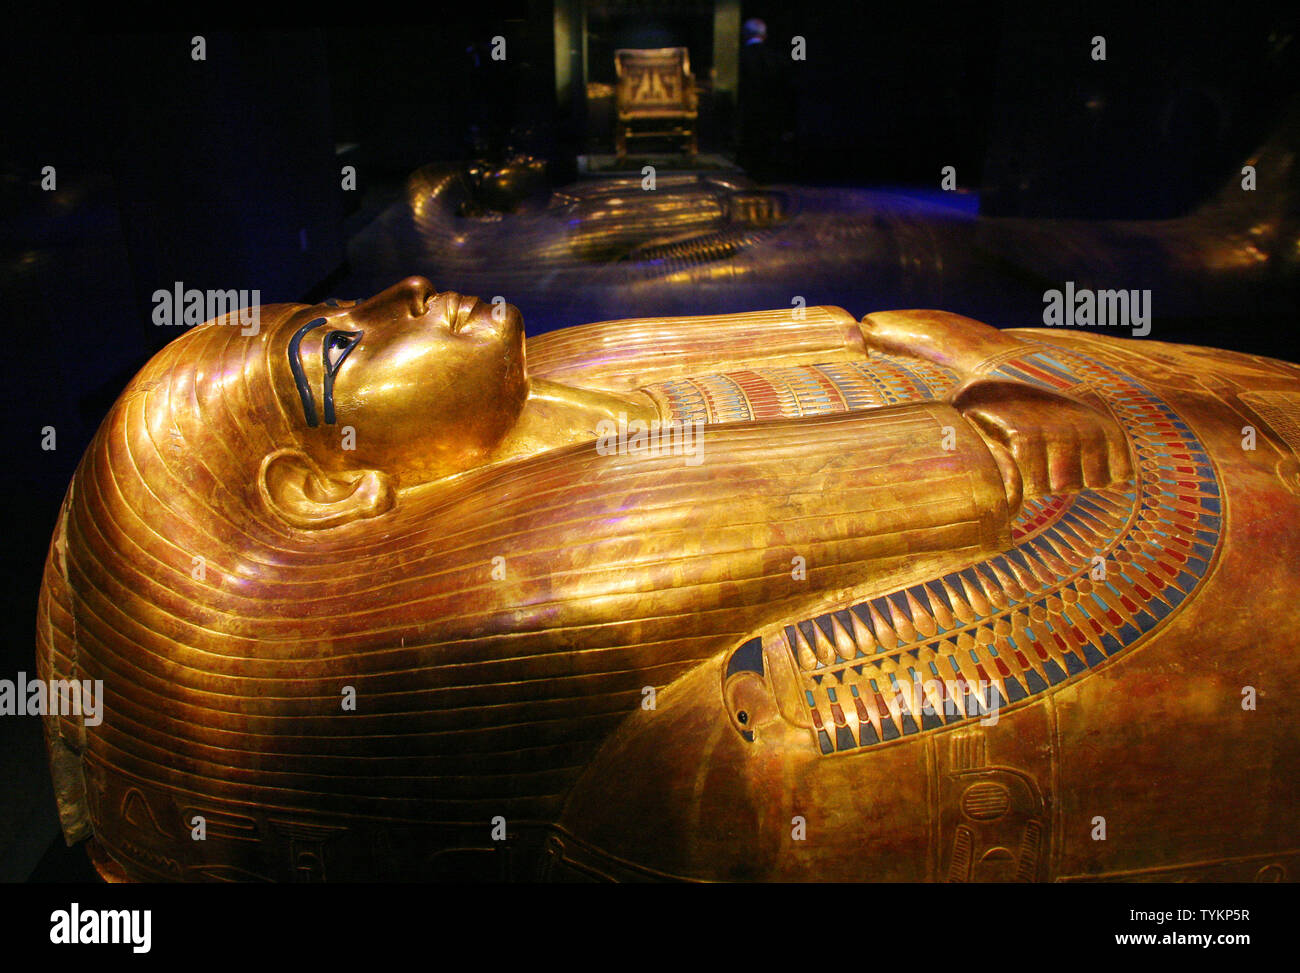 Le cercueil doré de Tyuya est exposée à l'exposition King Tut au Times Square Discovery Center le 21 avril 2010 à New York. L'exposition, qui dispose d'objets trouvés dans l'ancien garçon-king's Tomb, prend sa décision finale montrant avant d'être renvoyé en Égypte. (Photo d'UPI/Monika Graff) Banque D'Images